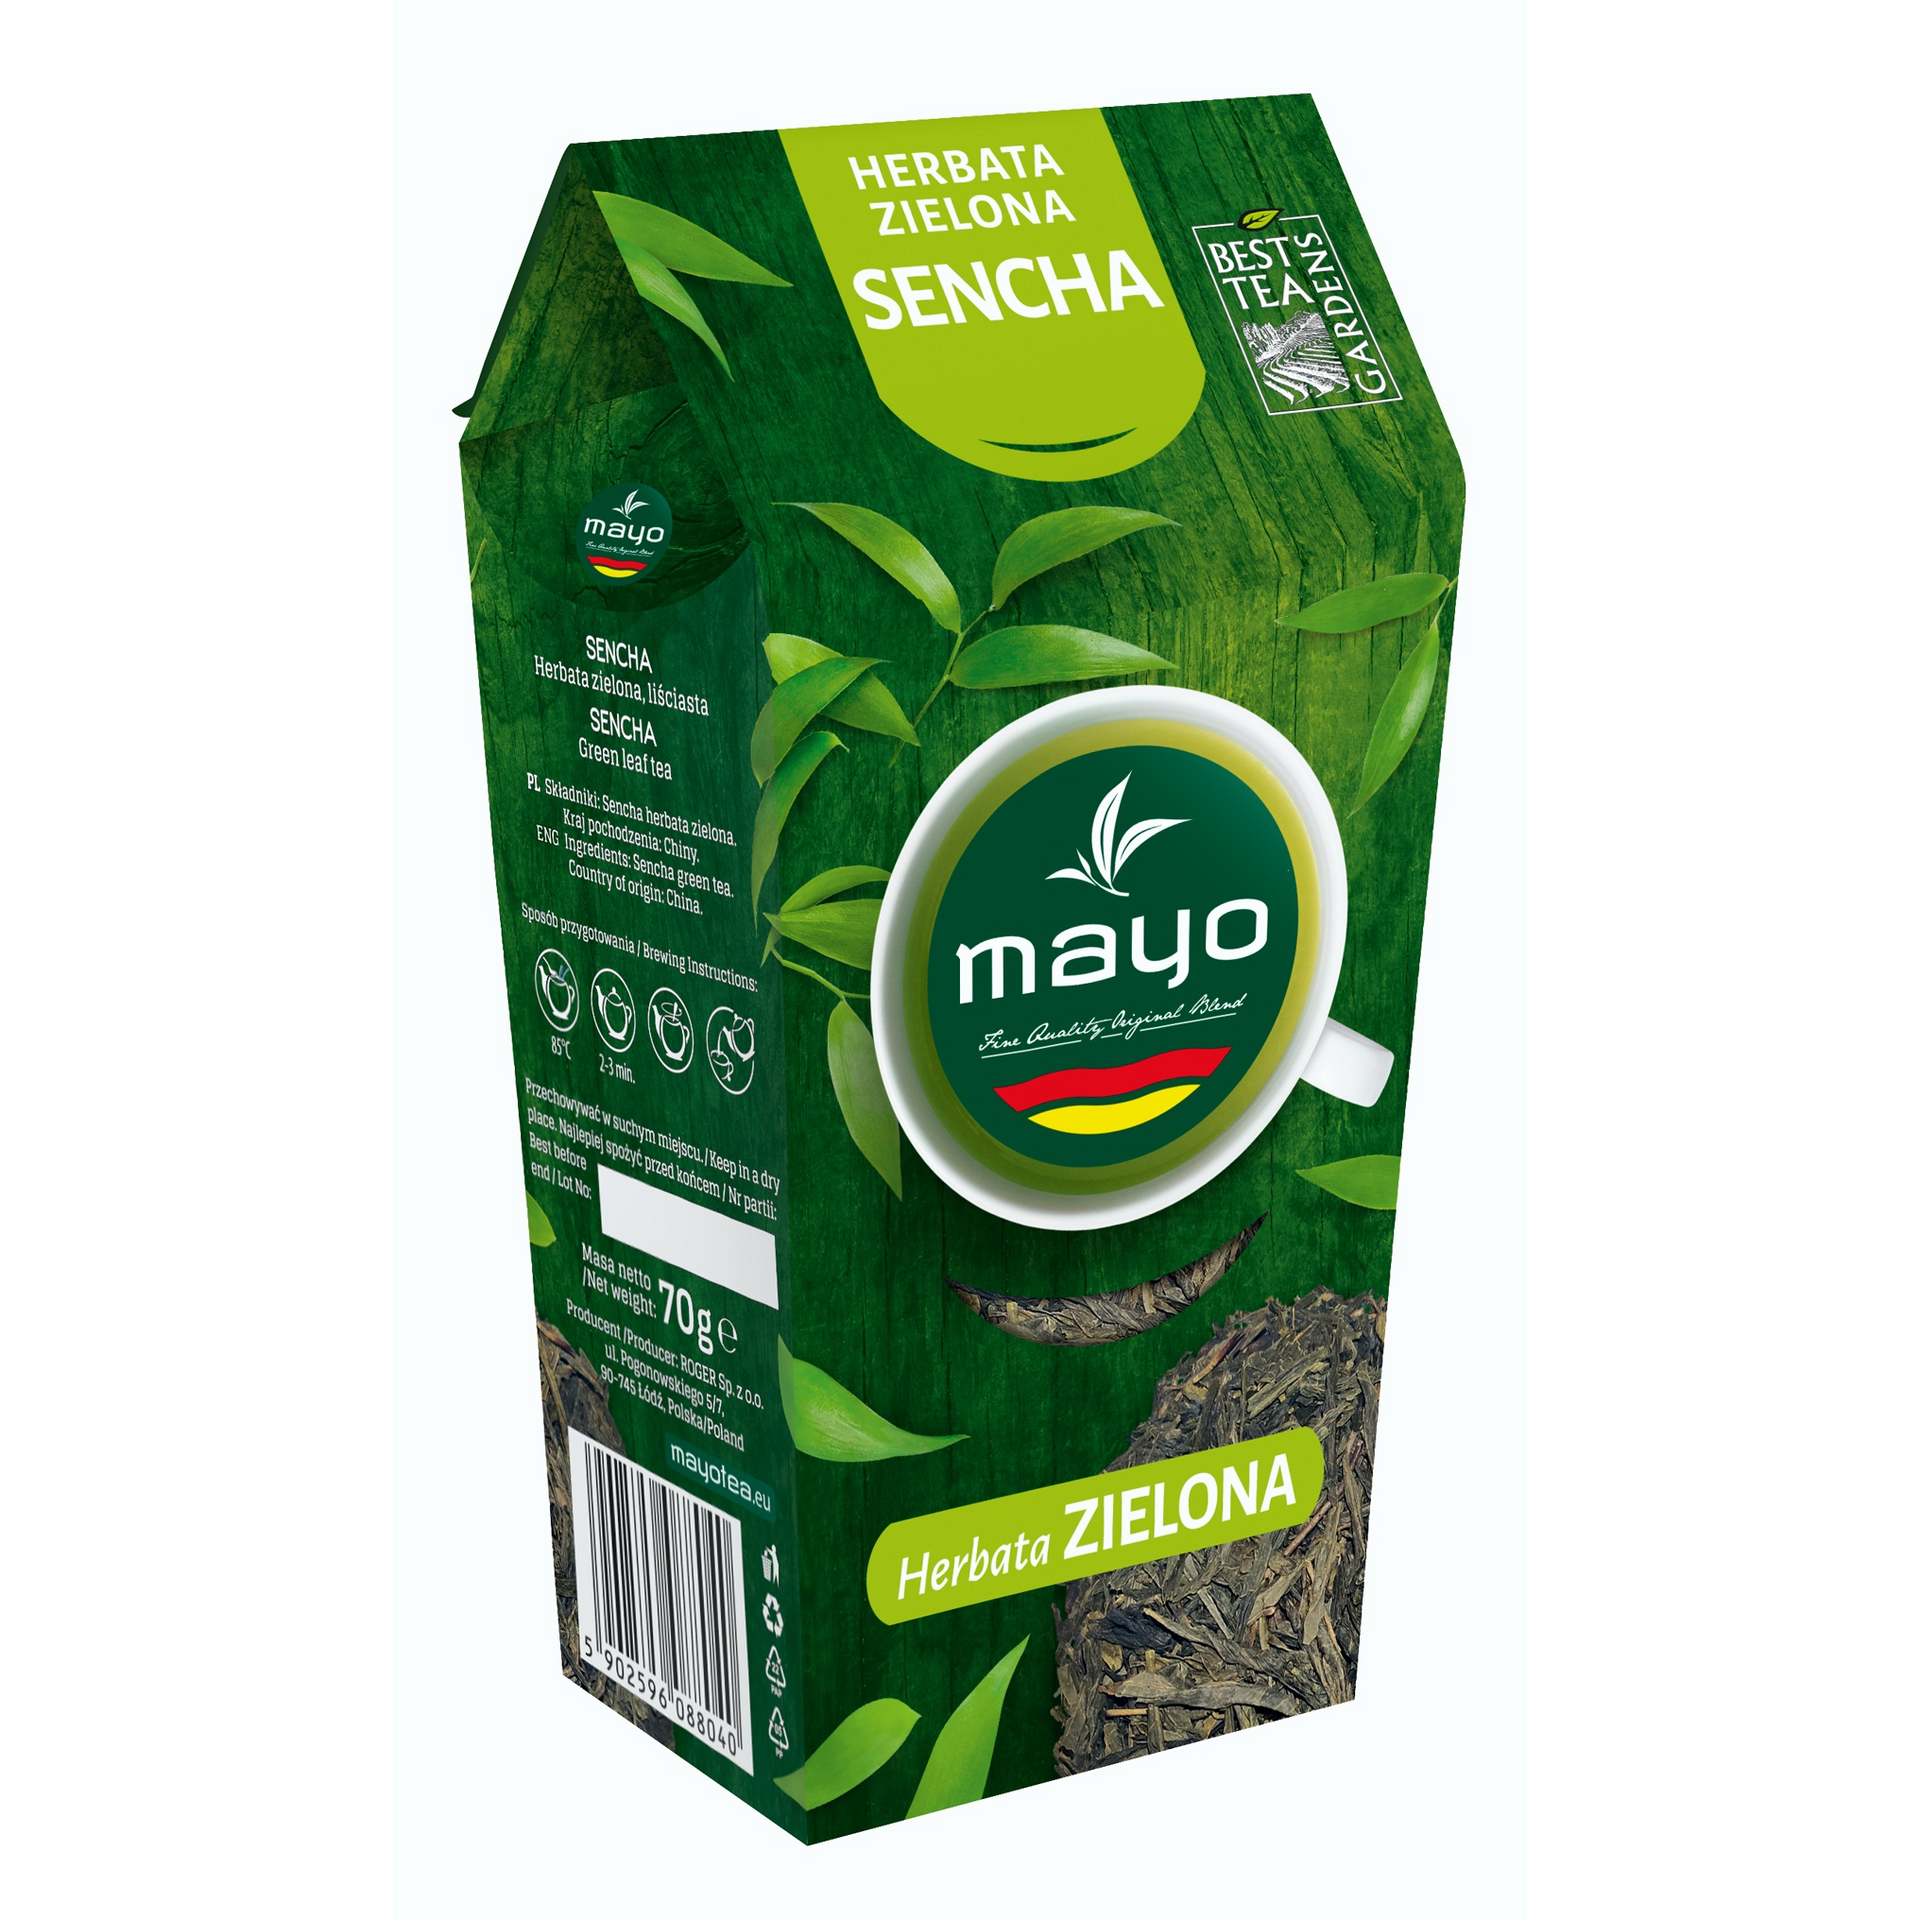 Mayo - Herbata zielona liściasta Sencha